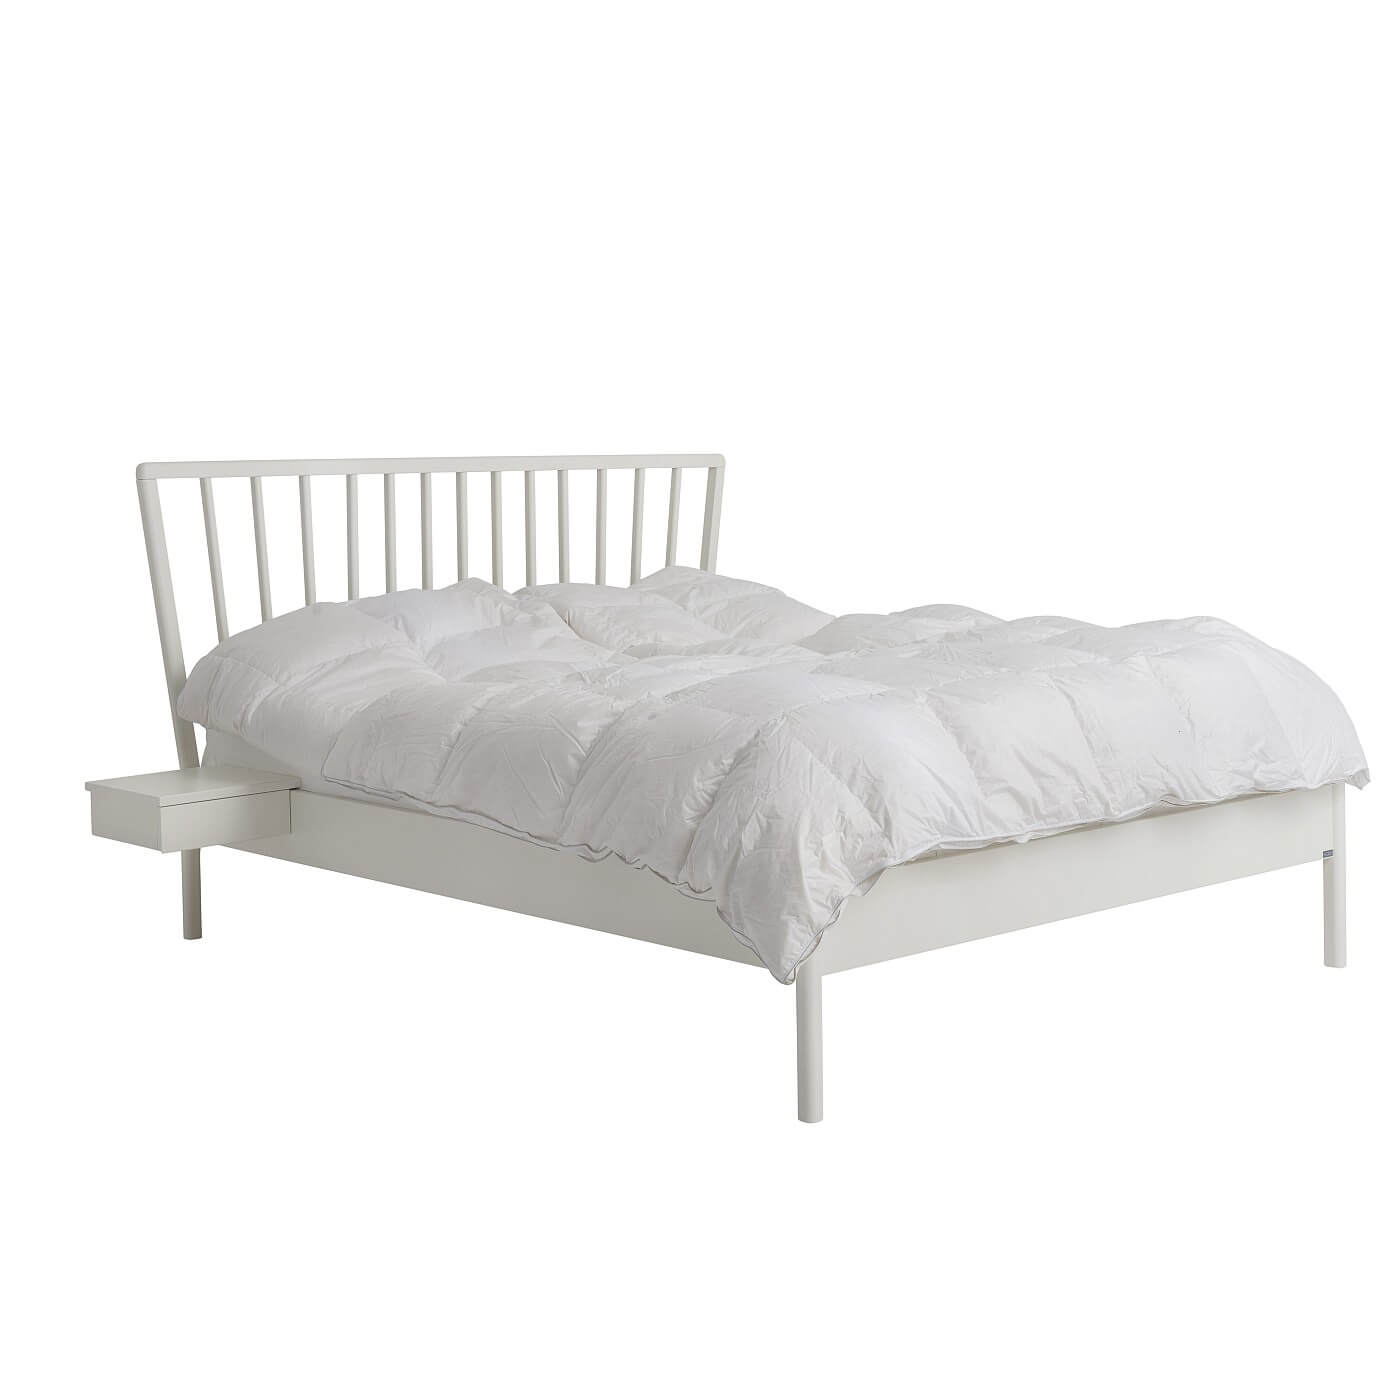 Łóżko skandynawskie białe MELODIA. Widoczne w całości łóżko drewniane do sypialni 160x200 z wiszącym białym stolikiem nocnym. Na łóżku leży biała skandynawska kołdra